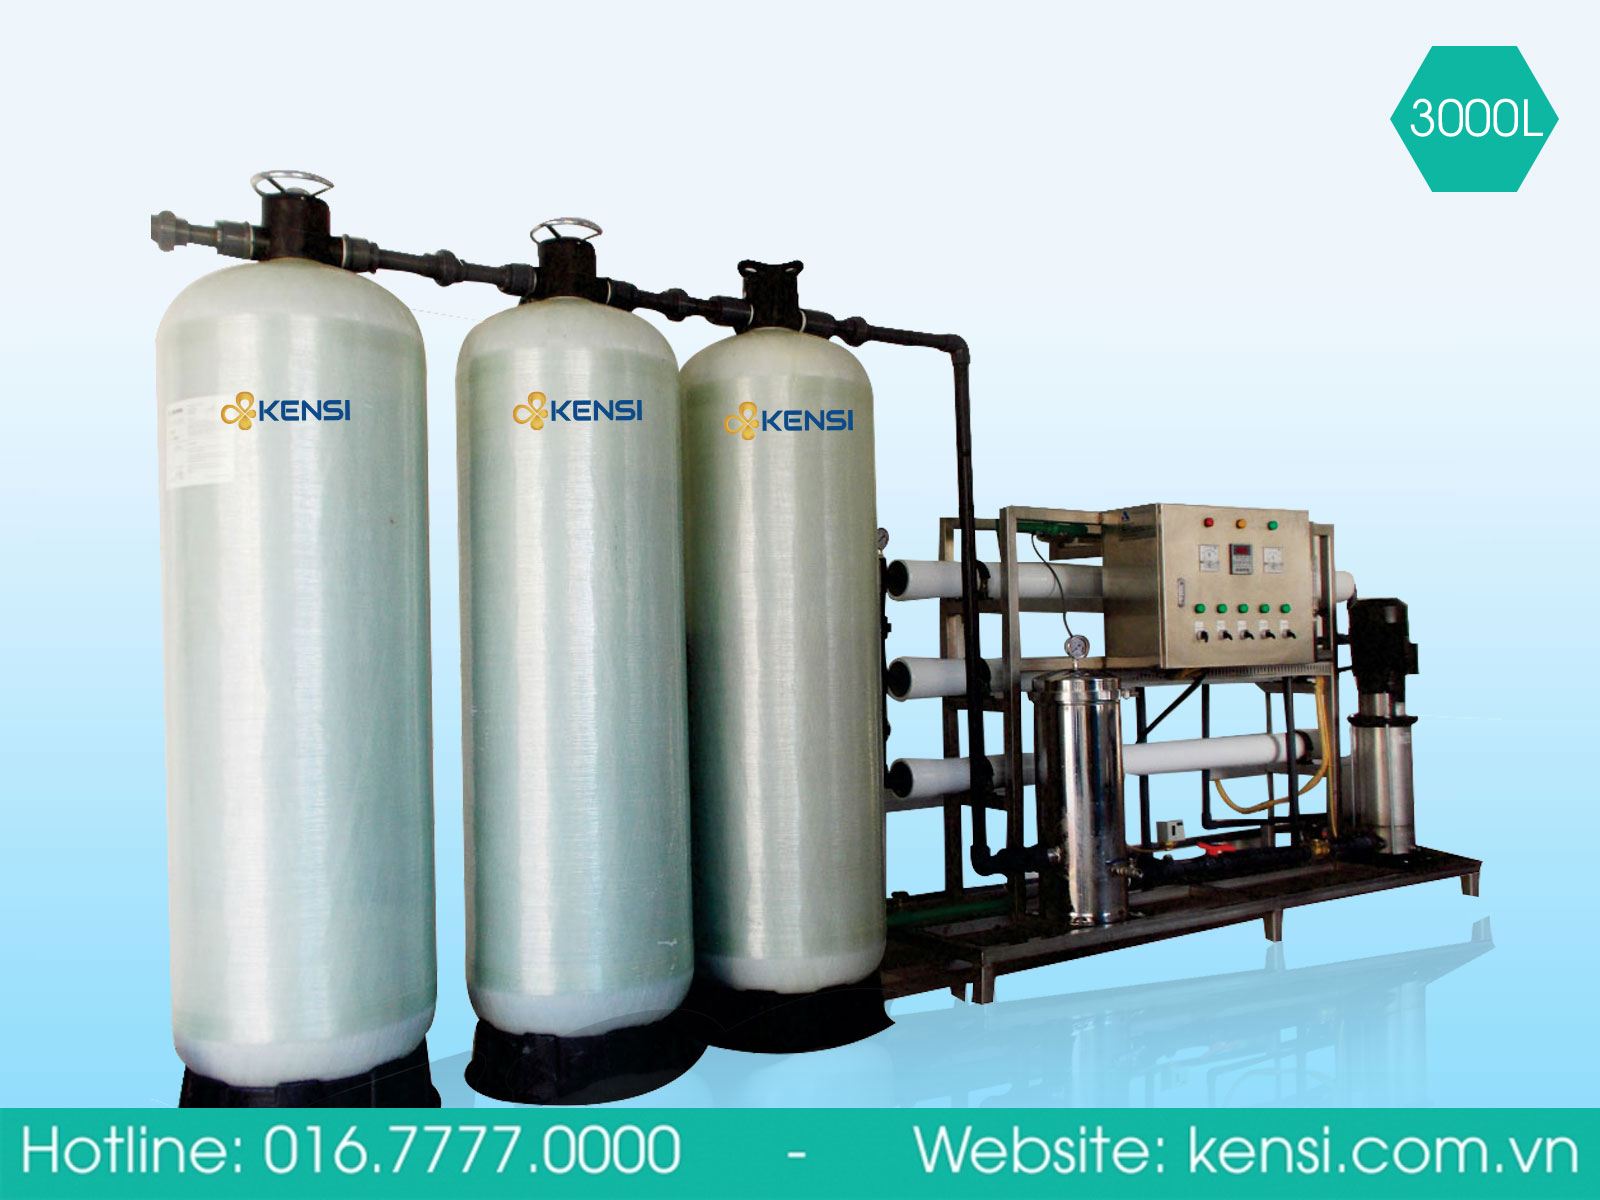 Hệ thống máy lọc nước công nghiệp RO cho nguồn nước sau lọc uống ngay không cần đun sôi, đáp ứng tiêu chuẩn nước đóng bình QCVN 6-1:2010/BYT